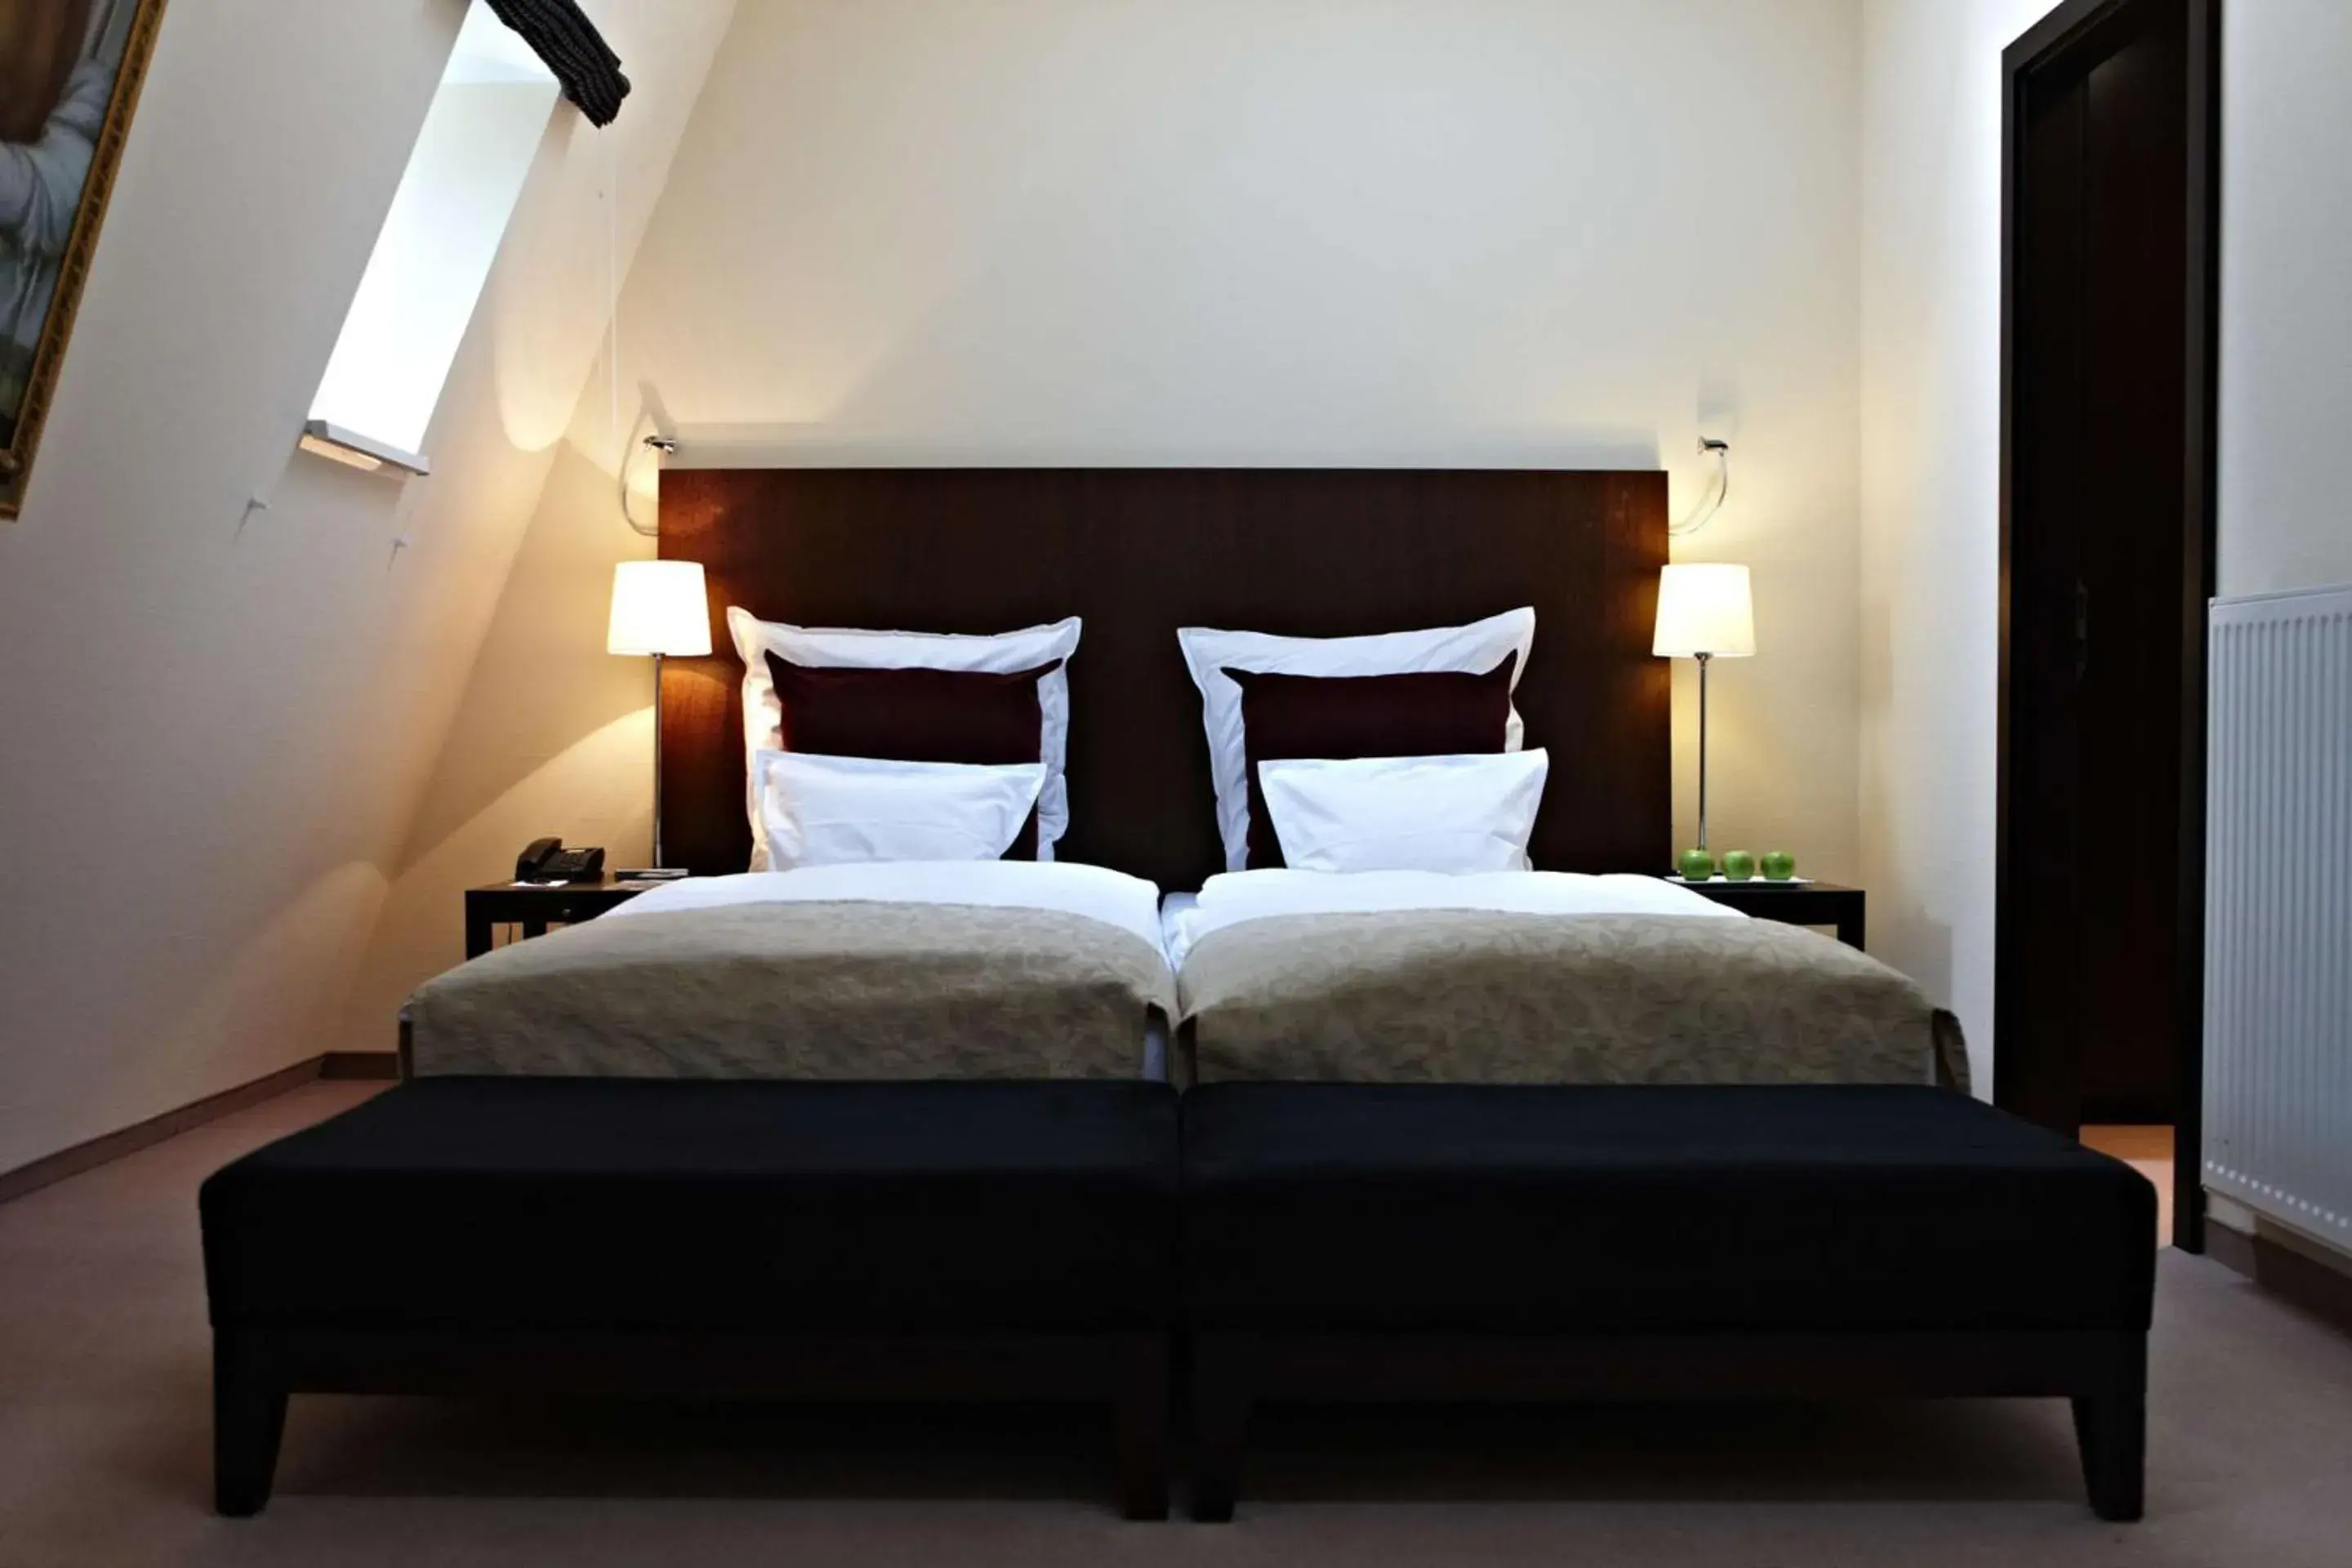 Bed in Metropolitan Hotel by Flemings